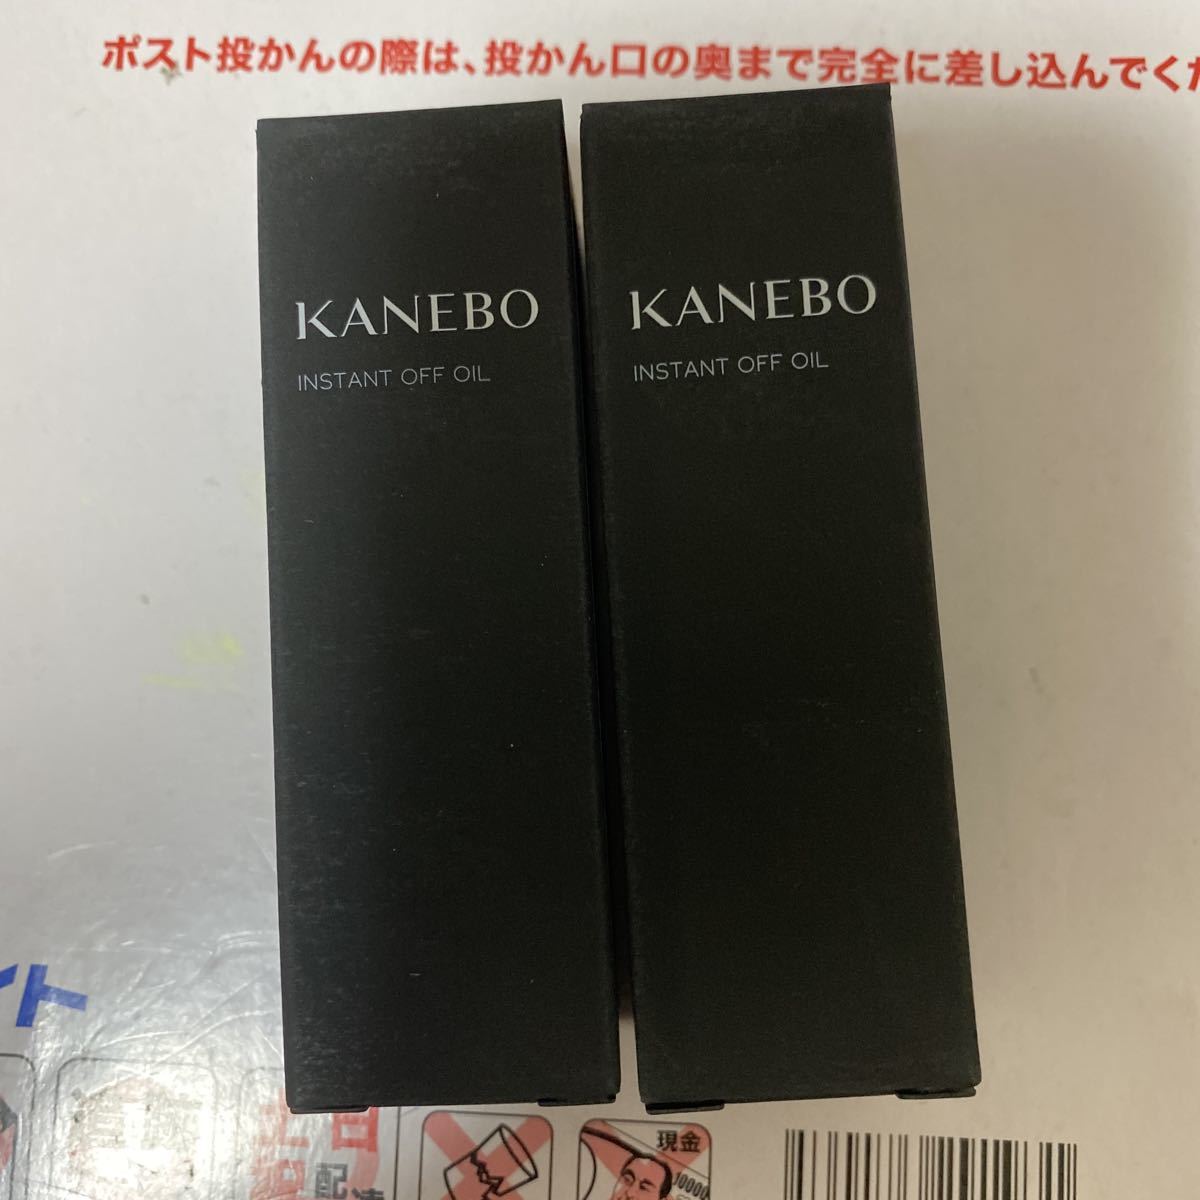  Kanebo мгновенный off масло макияж сбрасывание 30ml×2 шт новый товар не использовался 